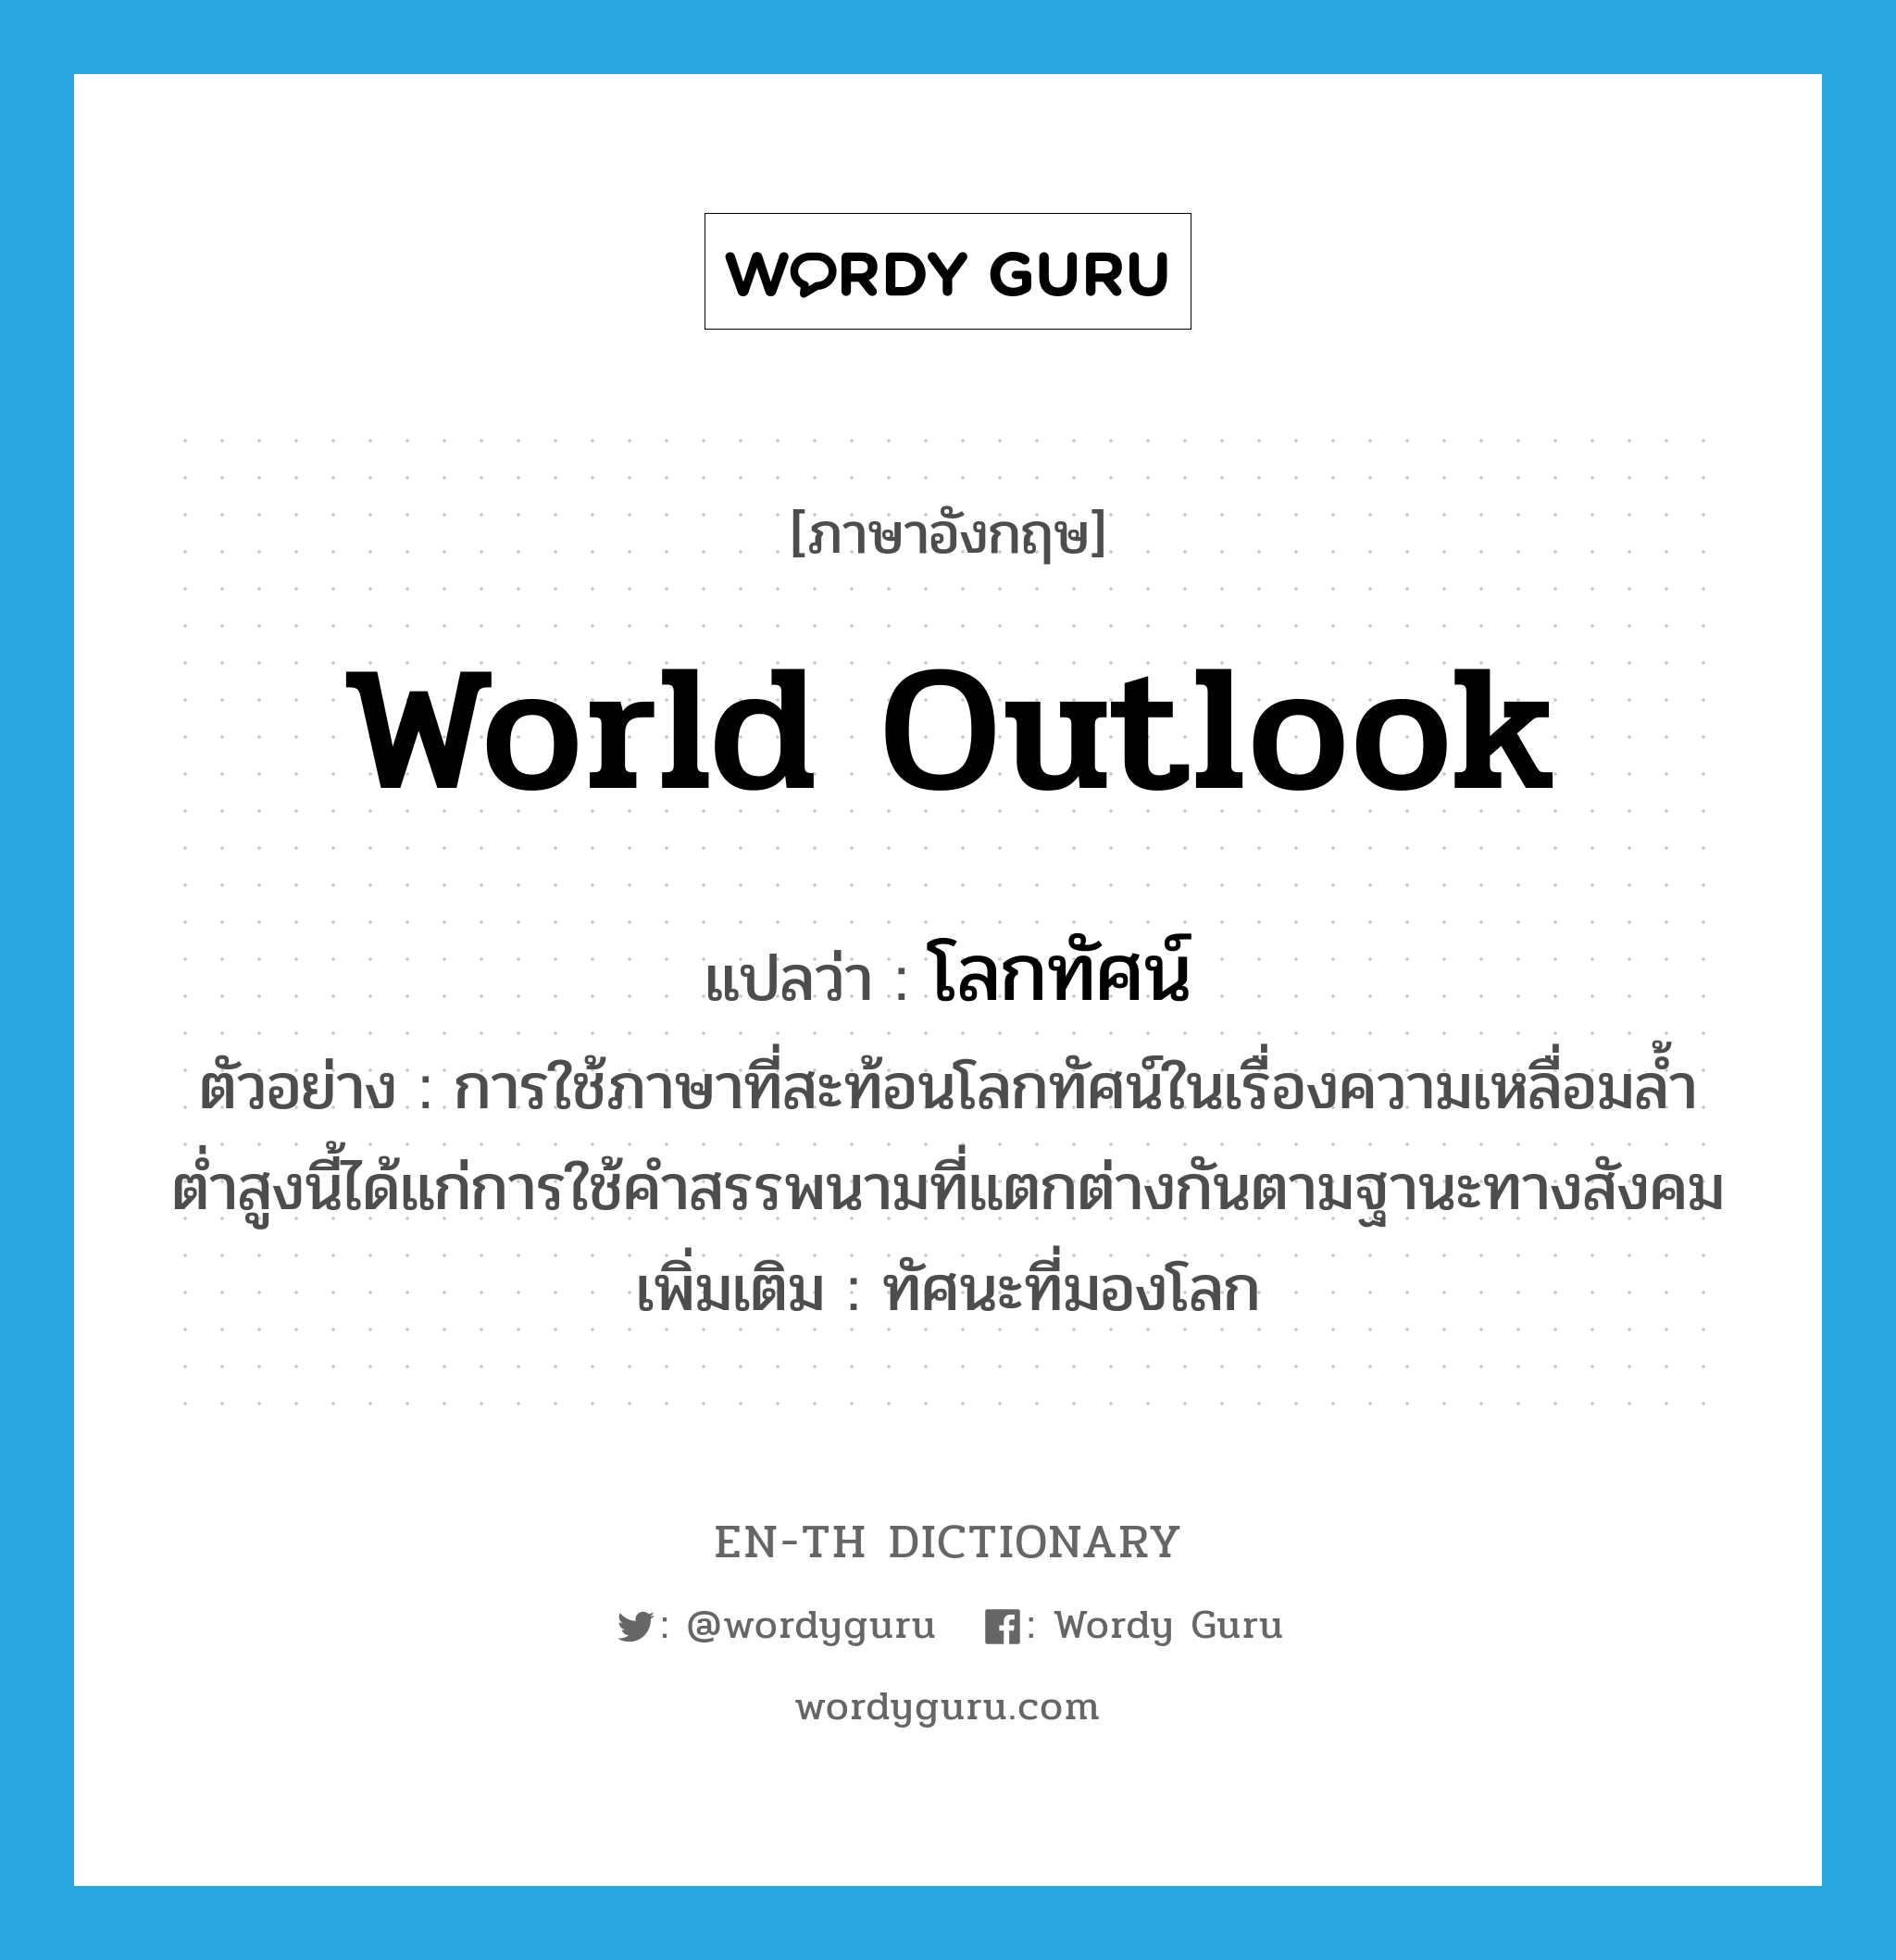 world outlook แปลว่า?, คำศัพท์ภาษาอังกฤษ world outlook แปลว่า โลกทัศน์ ประเภท N ตัวอย่าง การใช้ภาษาที่สะท้อนโลกทัศน์ในเรื่องความเหลื่อมล้ำต่ำสูงนี้ได้แก่การใช้คำสรรพนามที่แตกต่างกันตามฐานะทางสังคม เพิ่มเติม ทัศนะที่มองโลก หมวด N